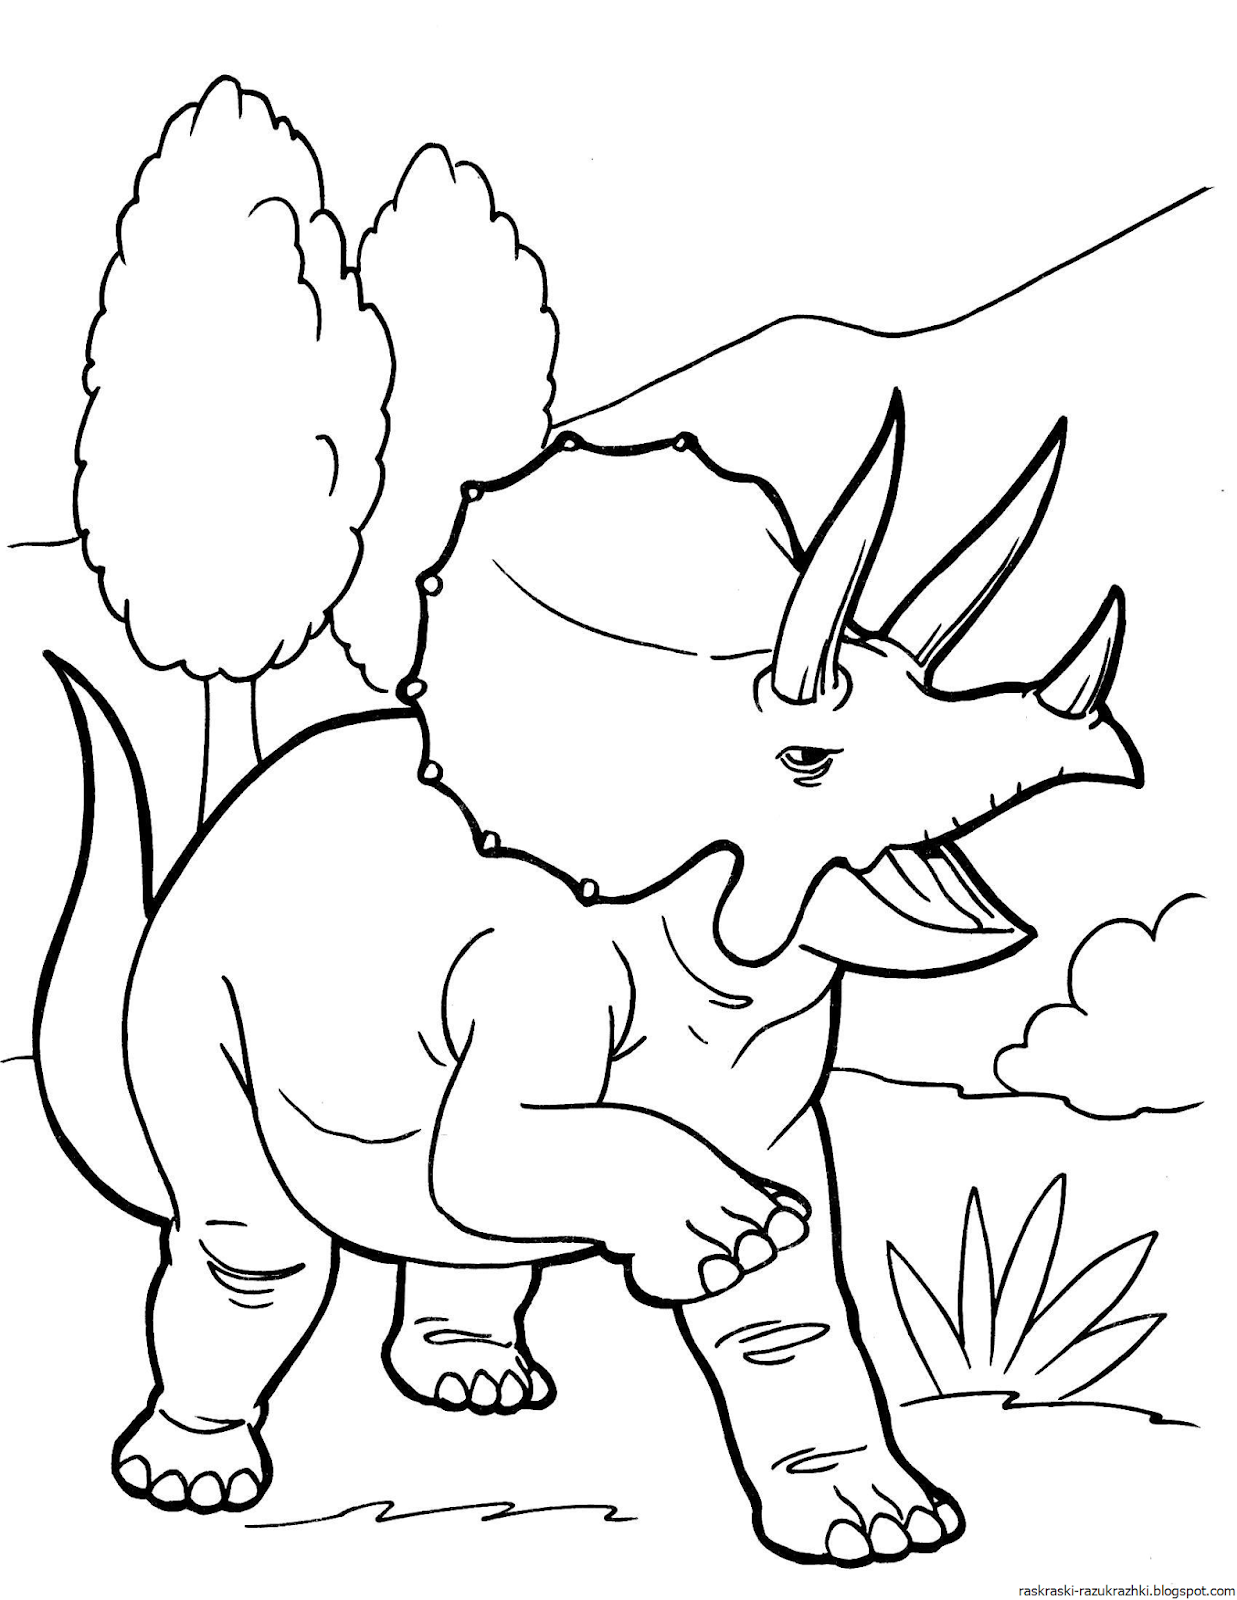 Раскраска динозавр формат а4. Динозавры / раскраска. Динозавр раскраска для детей. Раскраски для мальчиков динозавры. Динозаврики раскраска для детей.